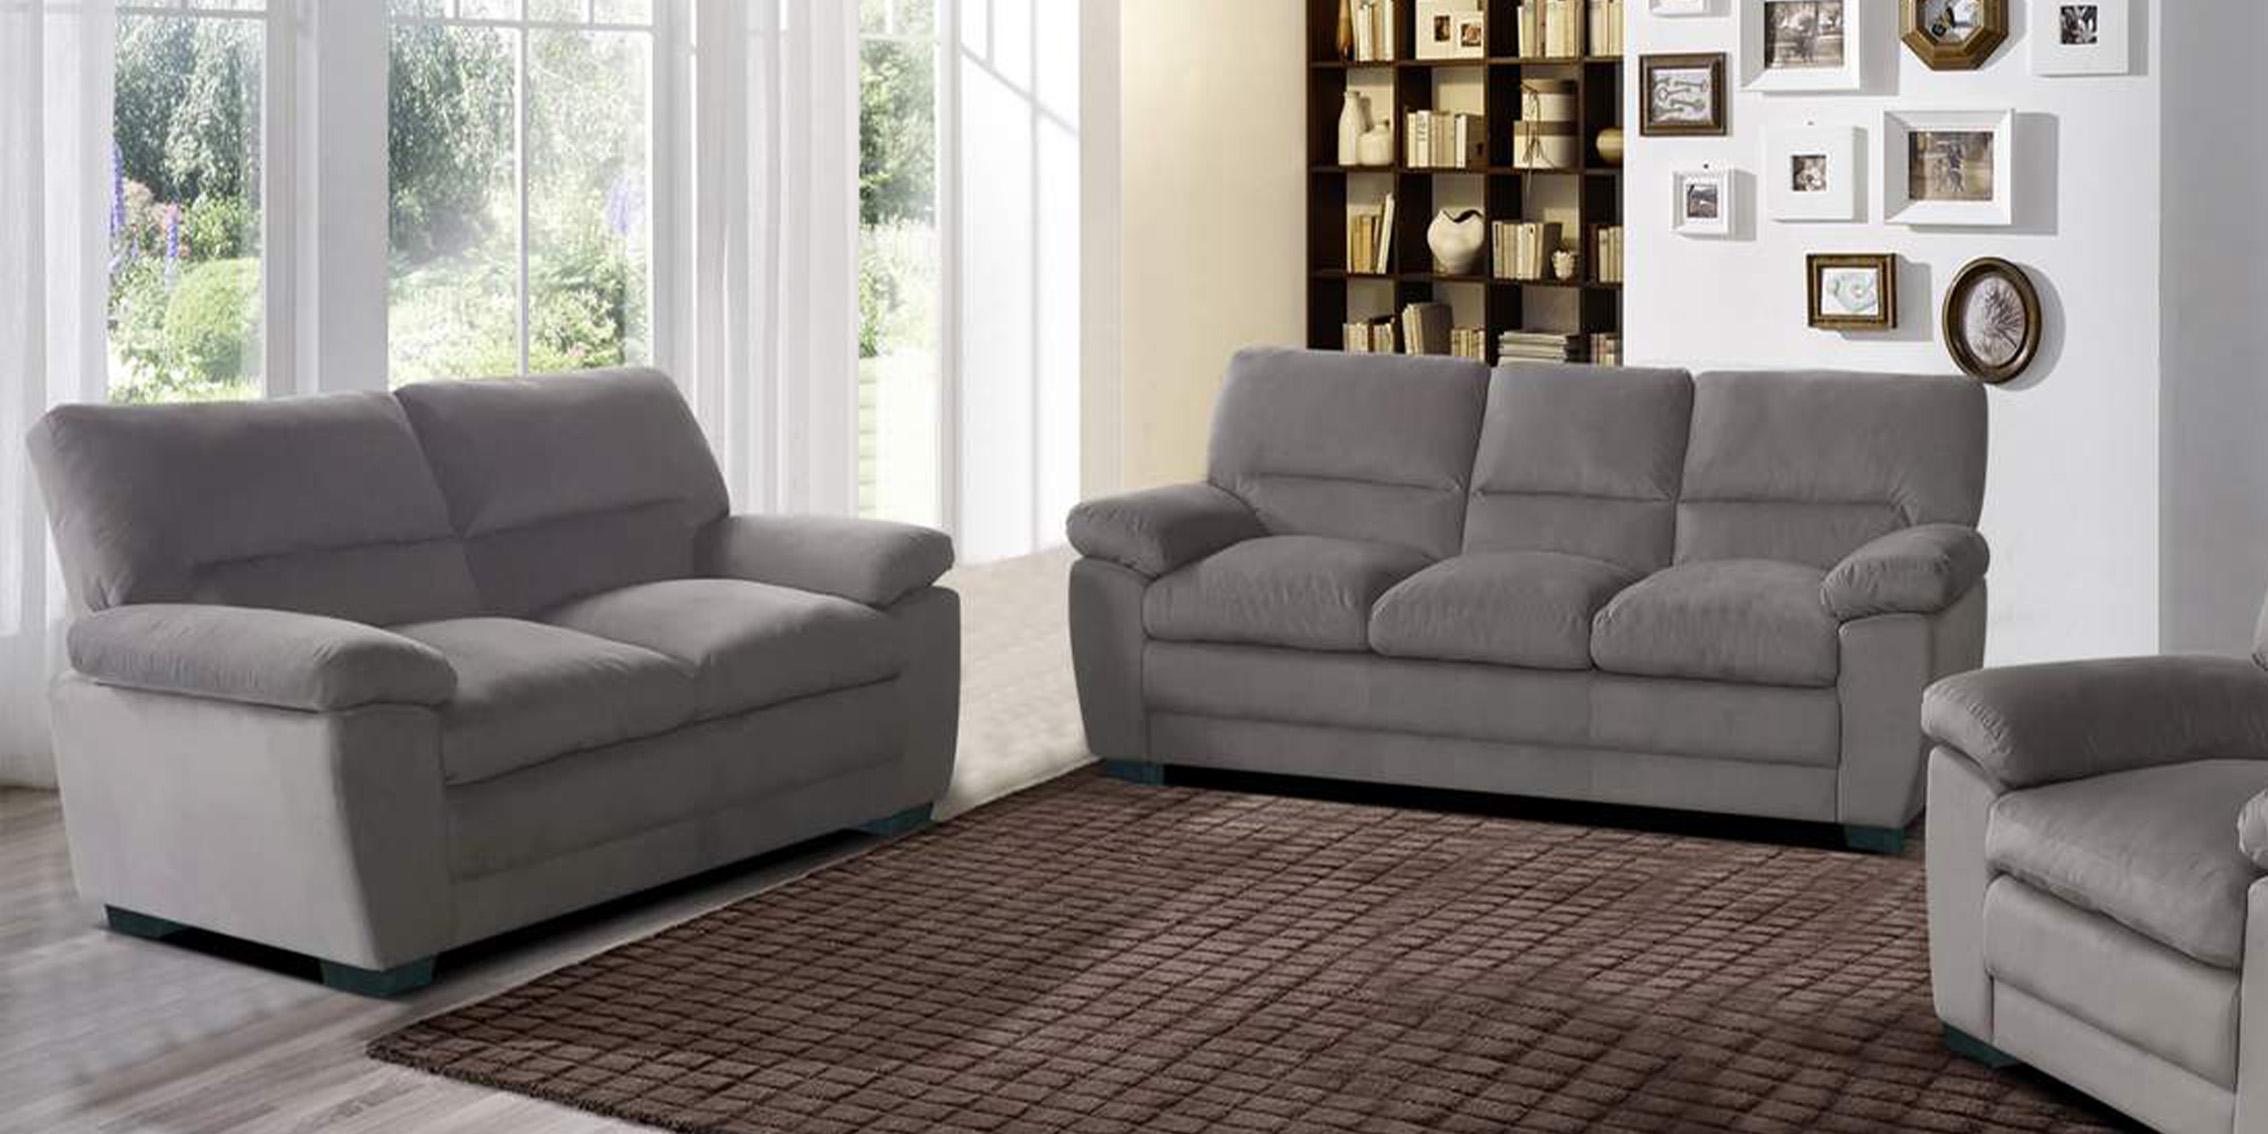 Galaxy Home Furniture MAXX Sofa Set